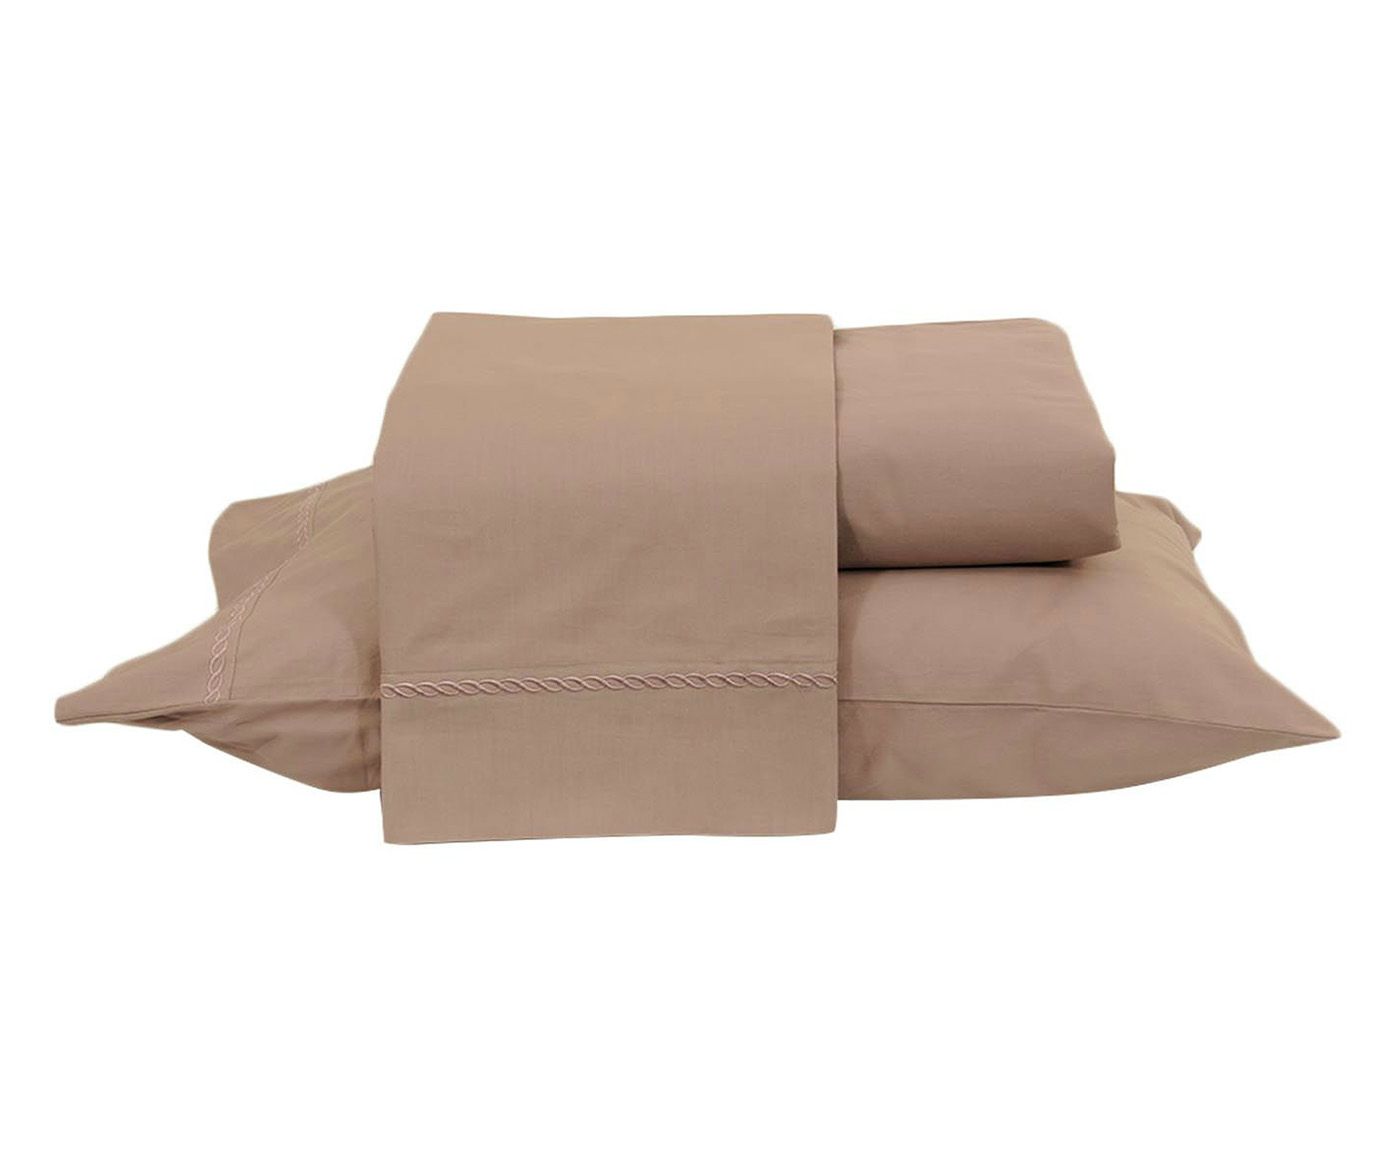 Jogo de lençol para cama queen size basic intuitive - 200 fios | Westwing.com.br